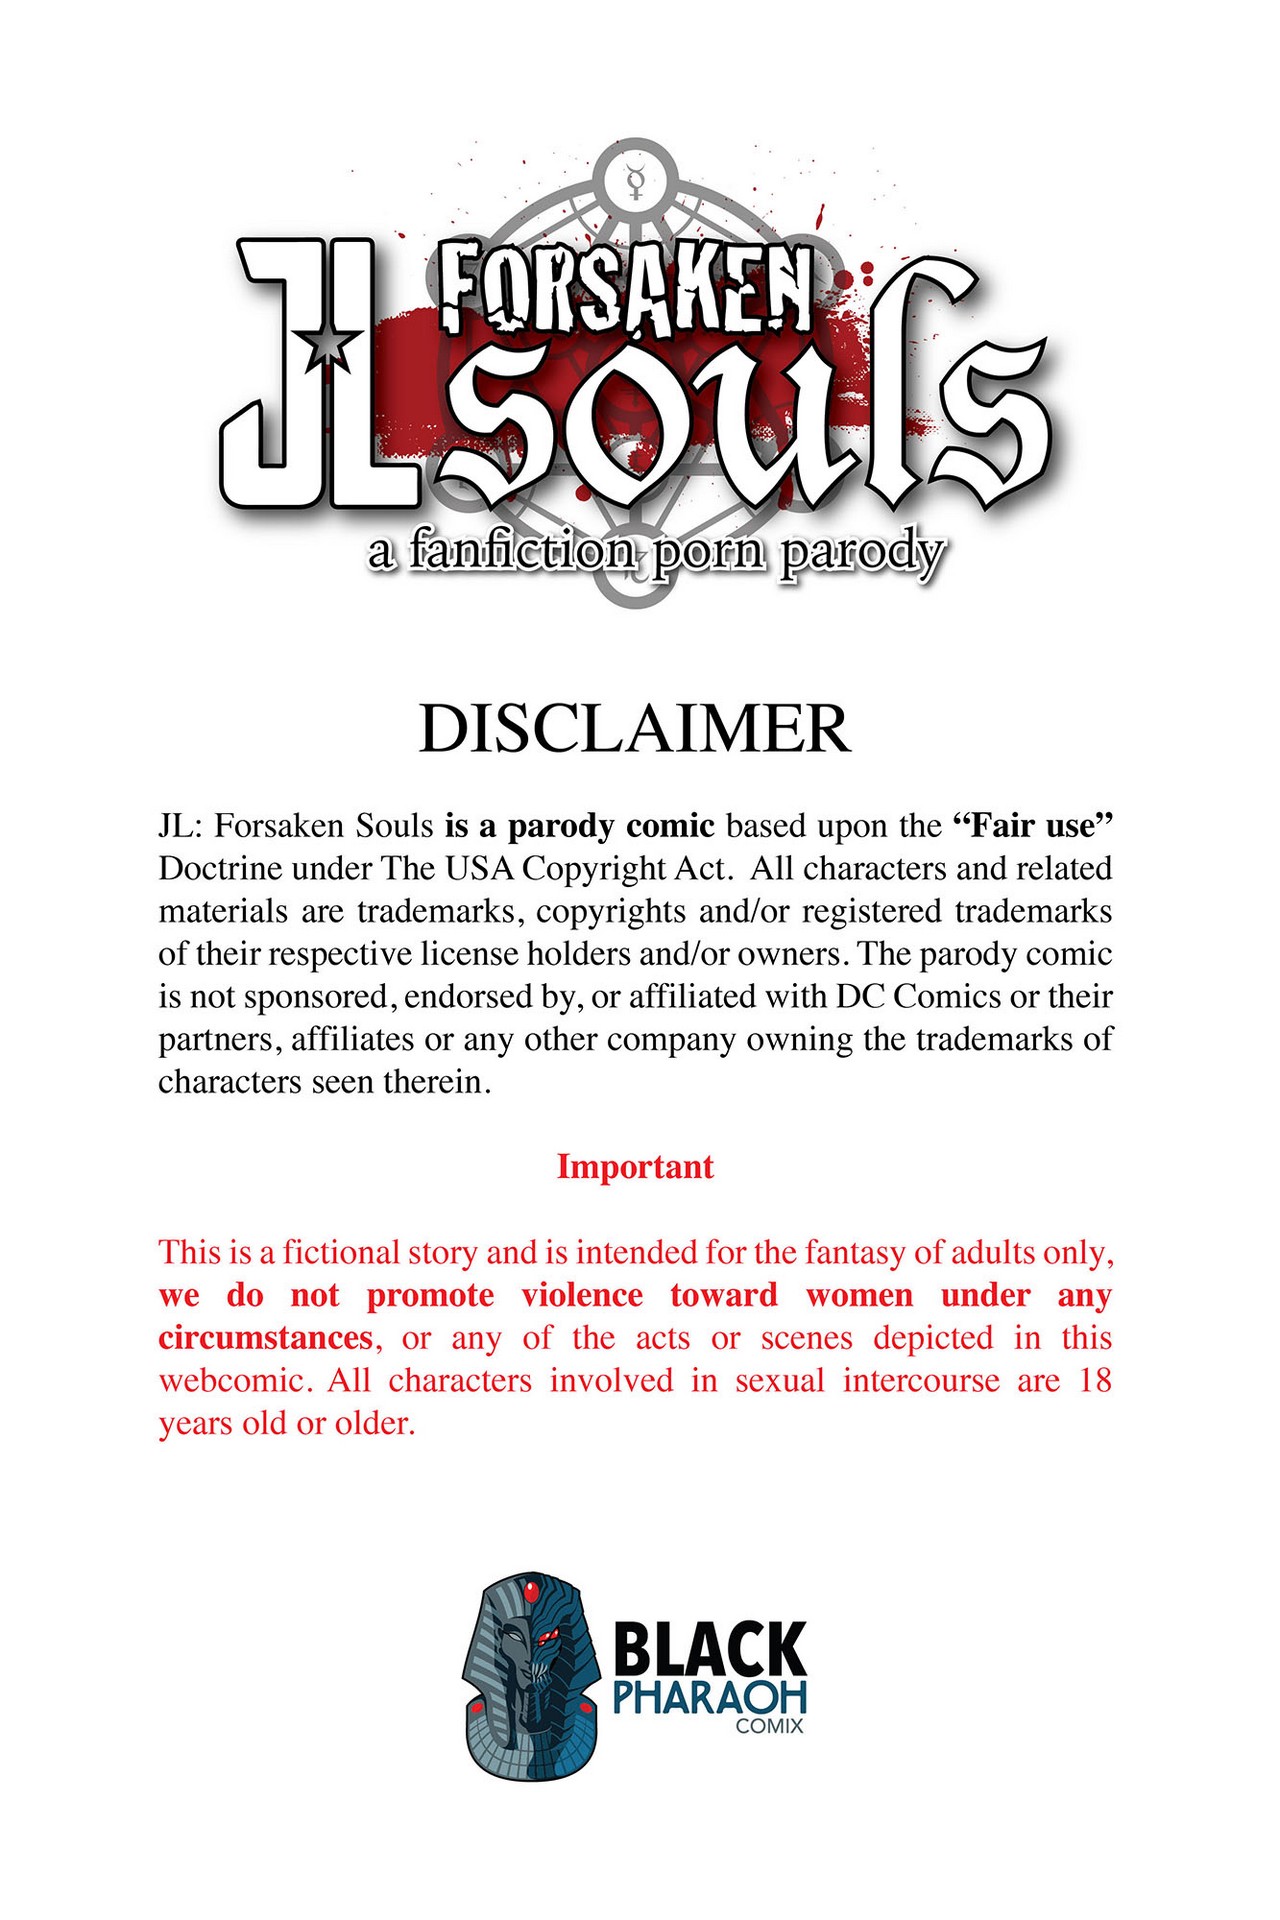 JL Forsaken Souls numero d'image 2